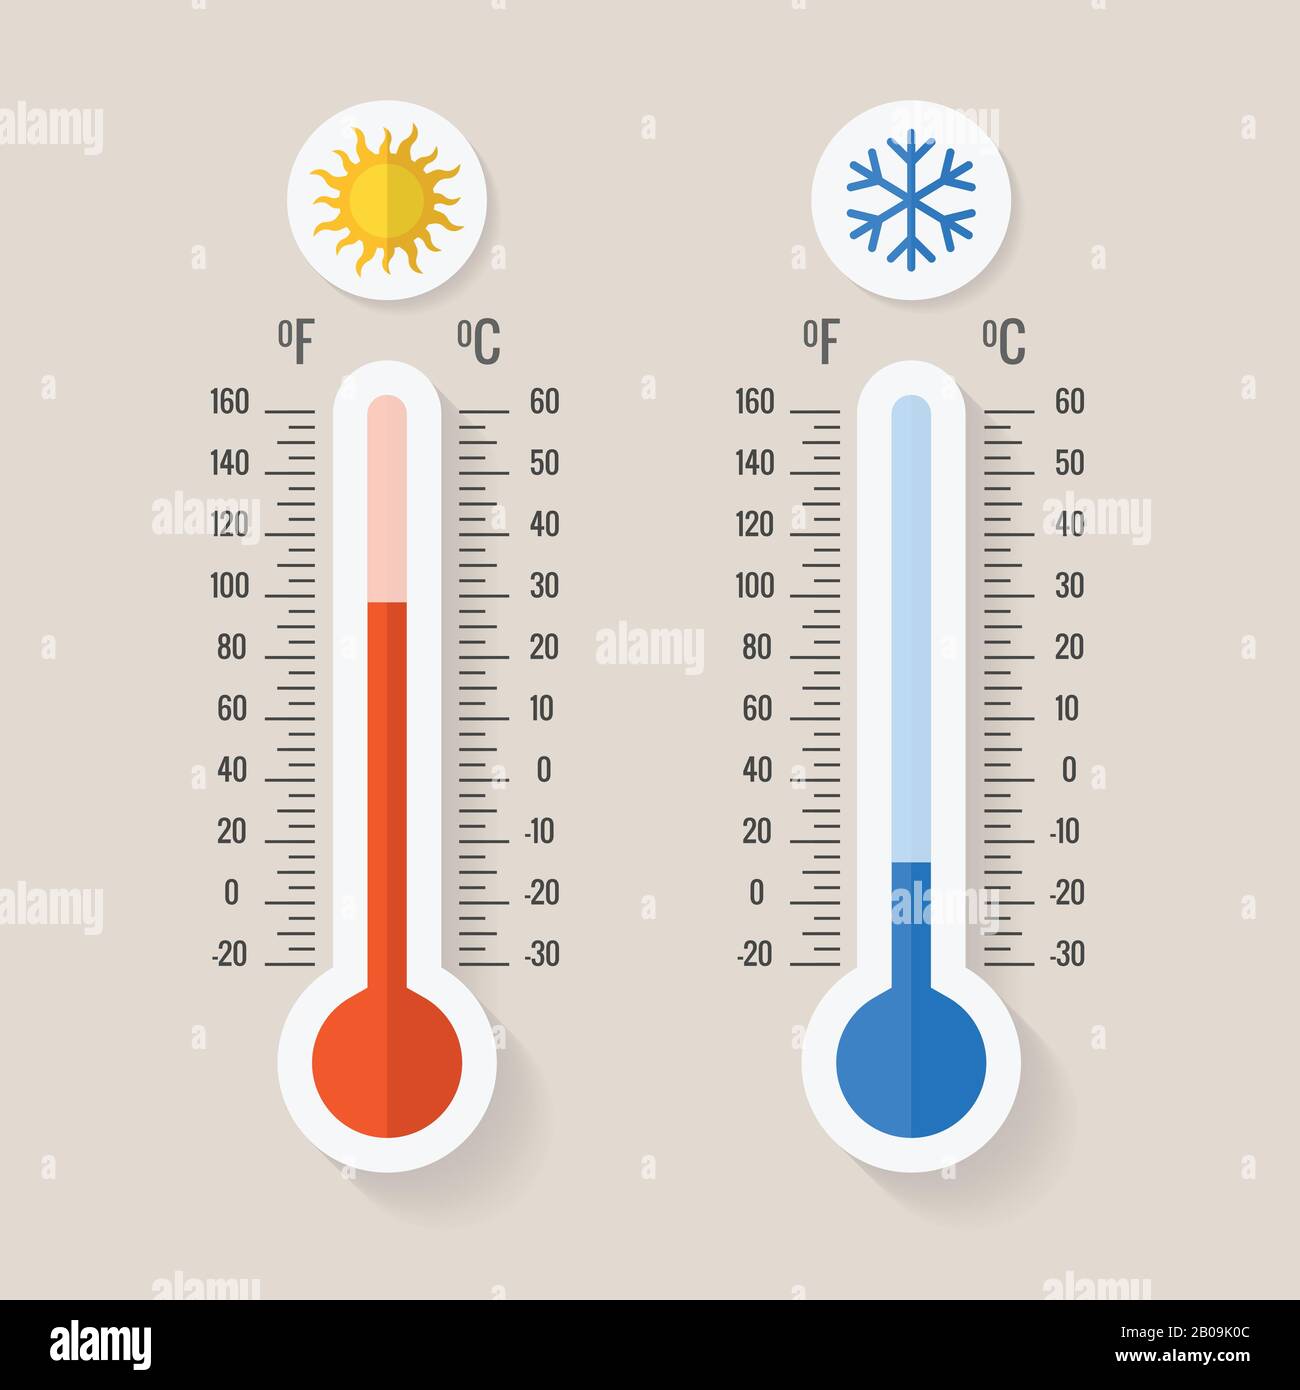 Meteorologiethermometer Celsius und fahrenheit, die Wärme und Kälte messen, Vektorgrafiken. Thermometergeräte, die heißes oder kaltes Wetter zeigen Stock Vektor